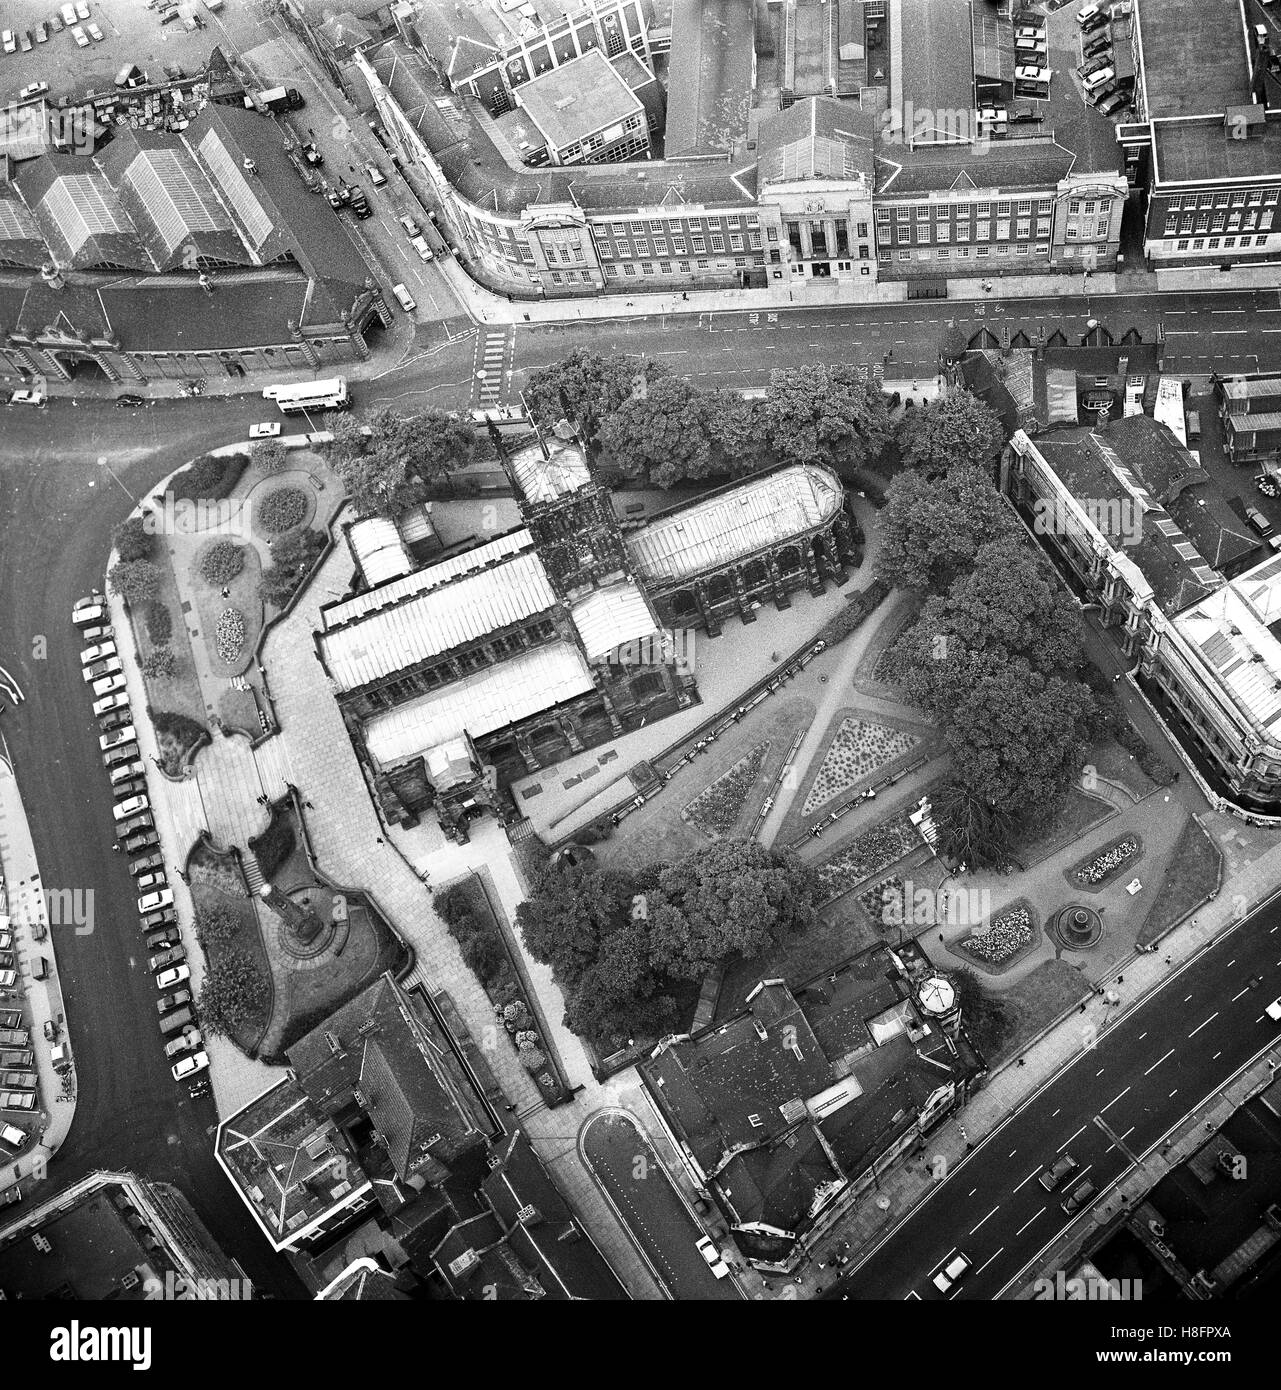 Luftaufnahme von Wolverhampton mit St. Peters Church College-Gebäuden (oben) und alten Markt oben links. 07.05.73 Stockfoto